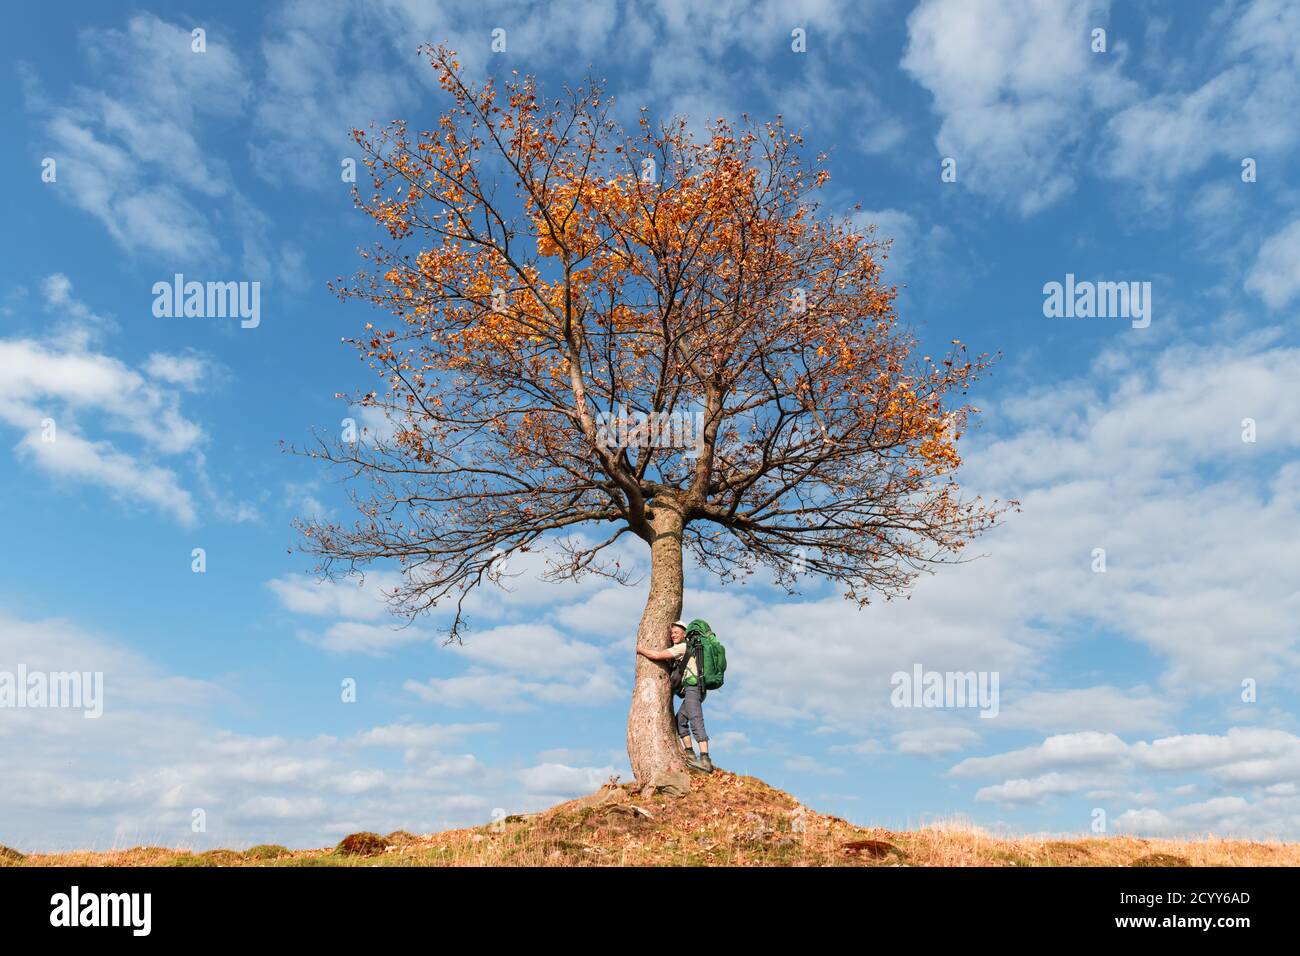 Turista bajo el majestuoso árbol naranja en el valle de la montaña de otoño. Espectacular colorido escenario de otoño con cielo azul nublado. Fotografía de paisajes Foto de stock